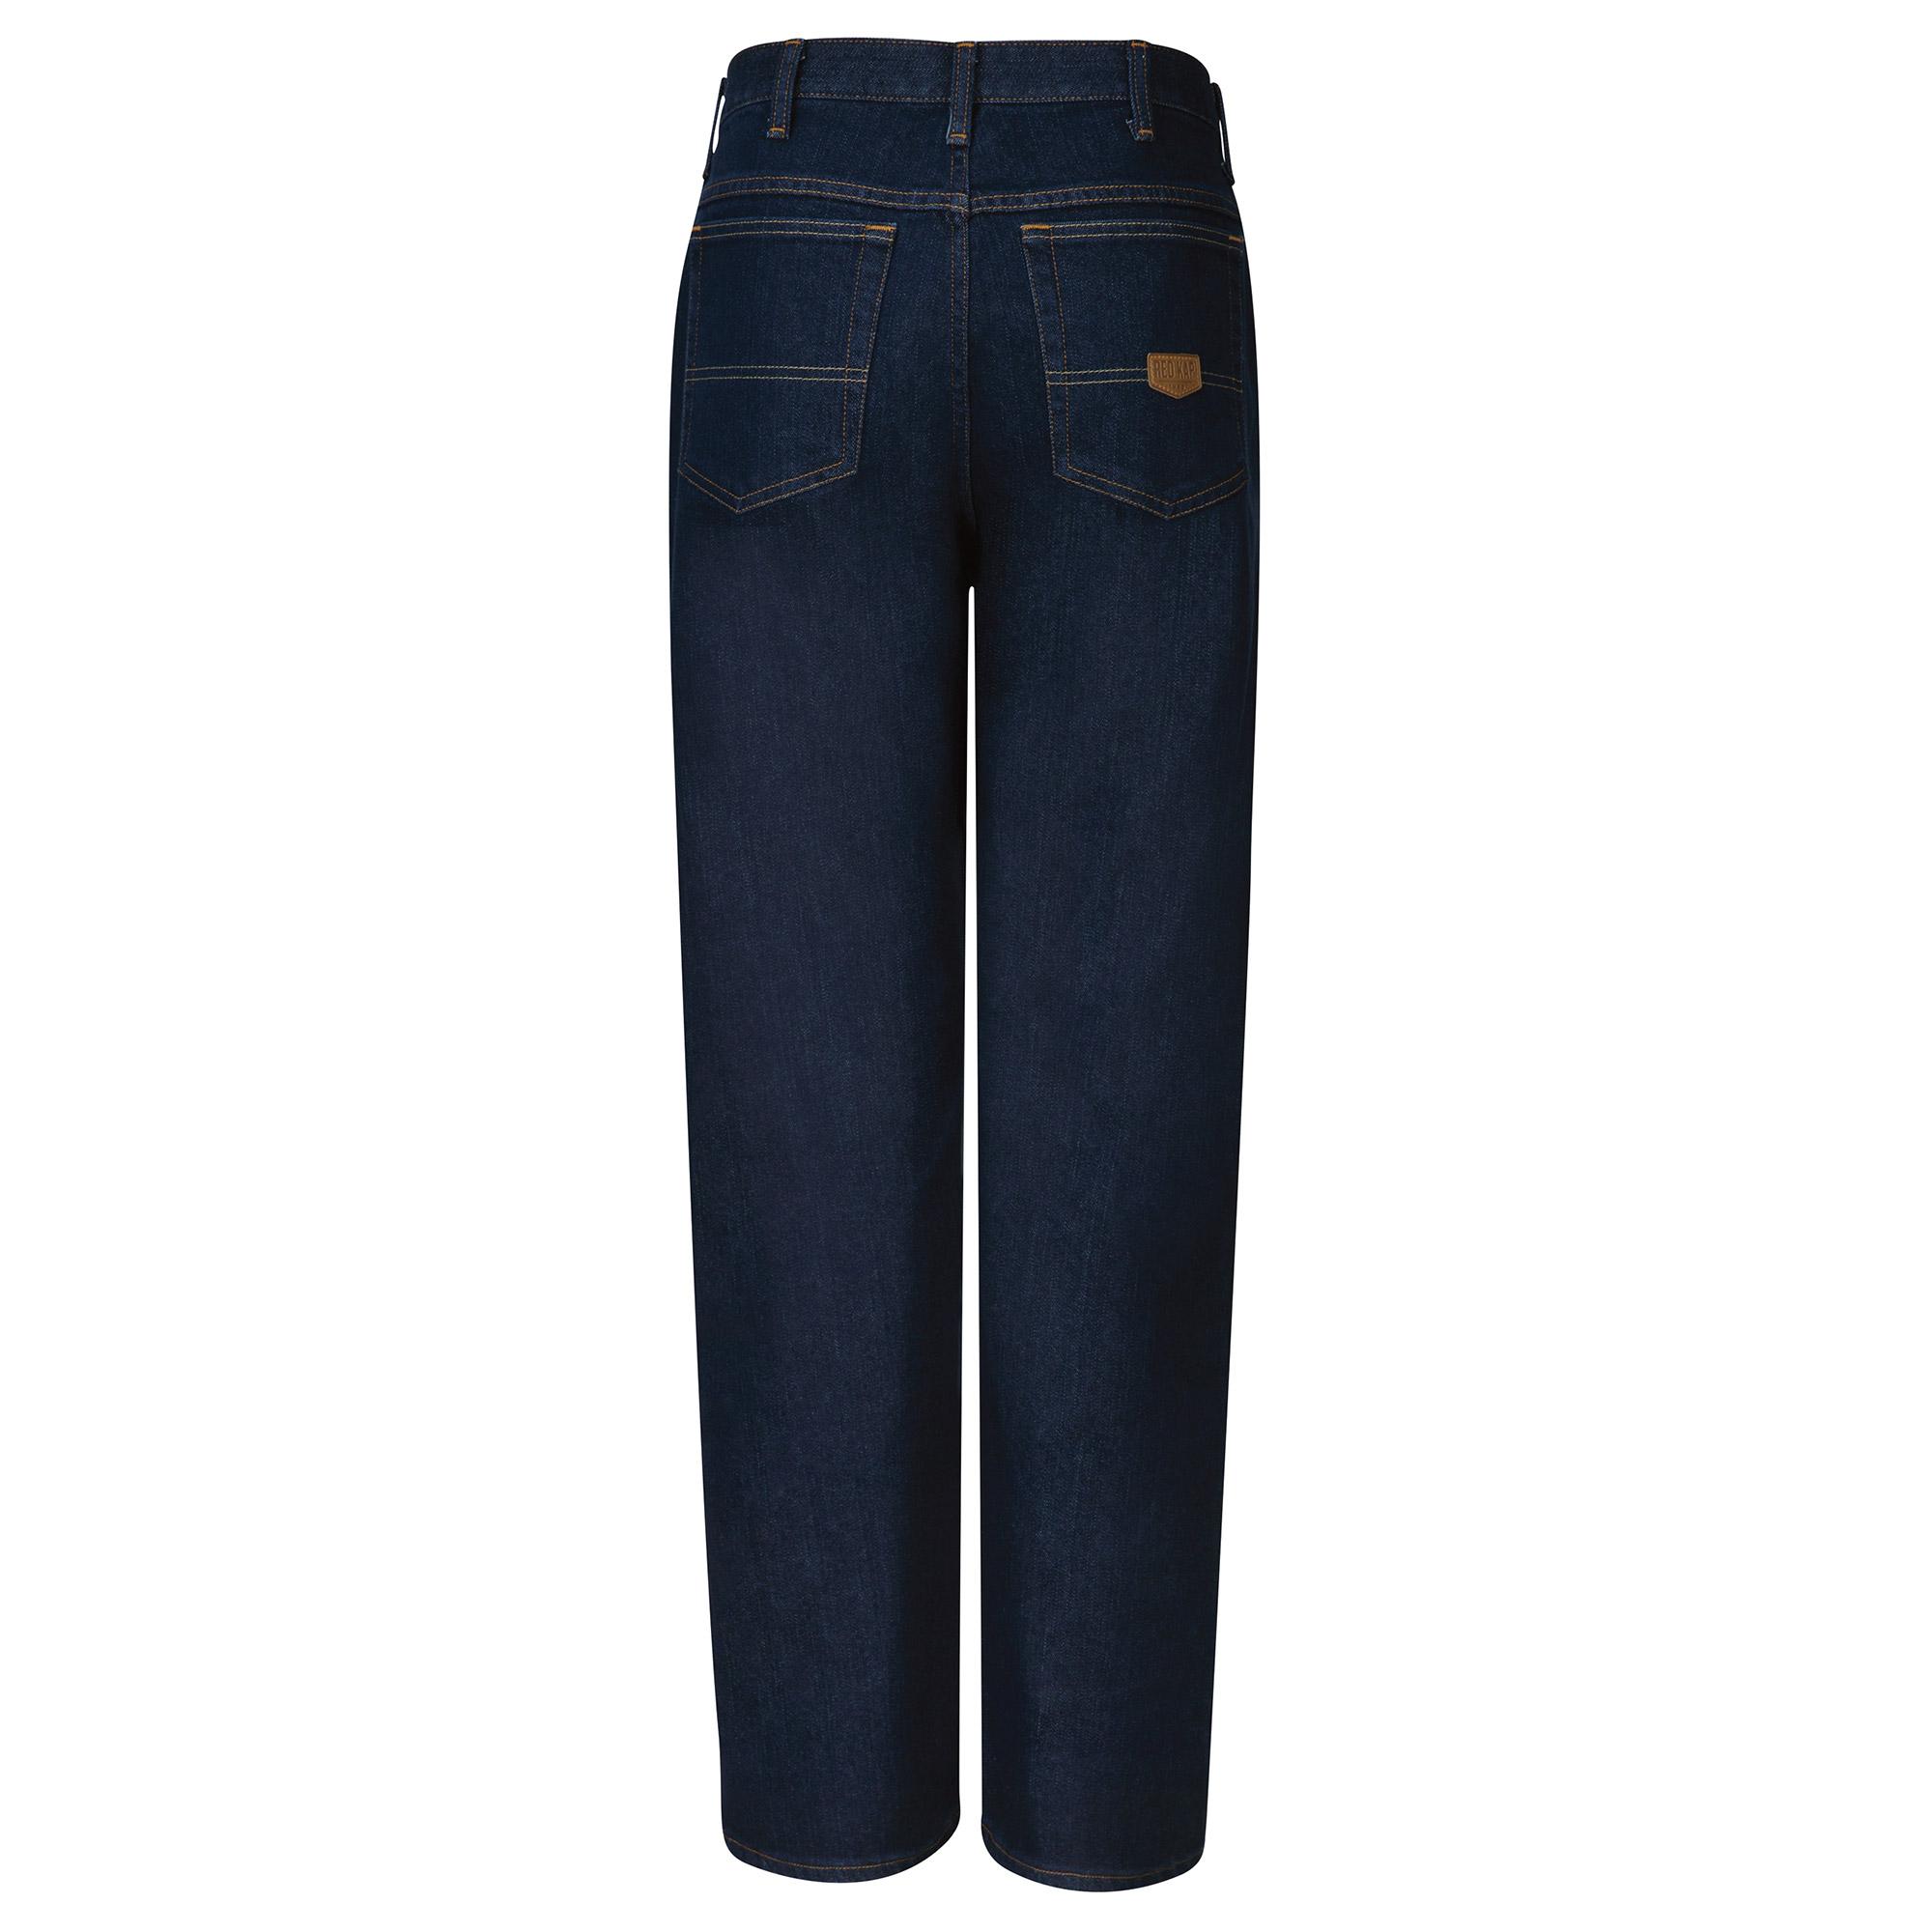 Red Kap PD90 Men's Dura-Kap Flex Work Jeans - Prewashed Indigo | Full ...